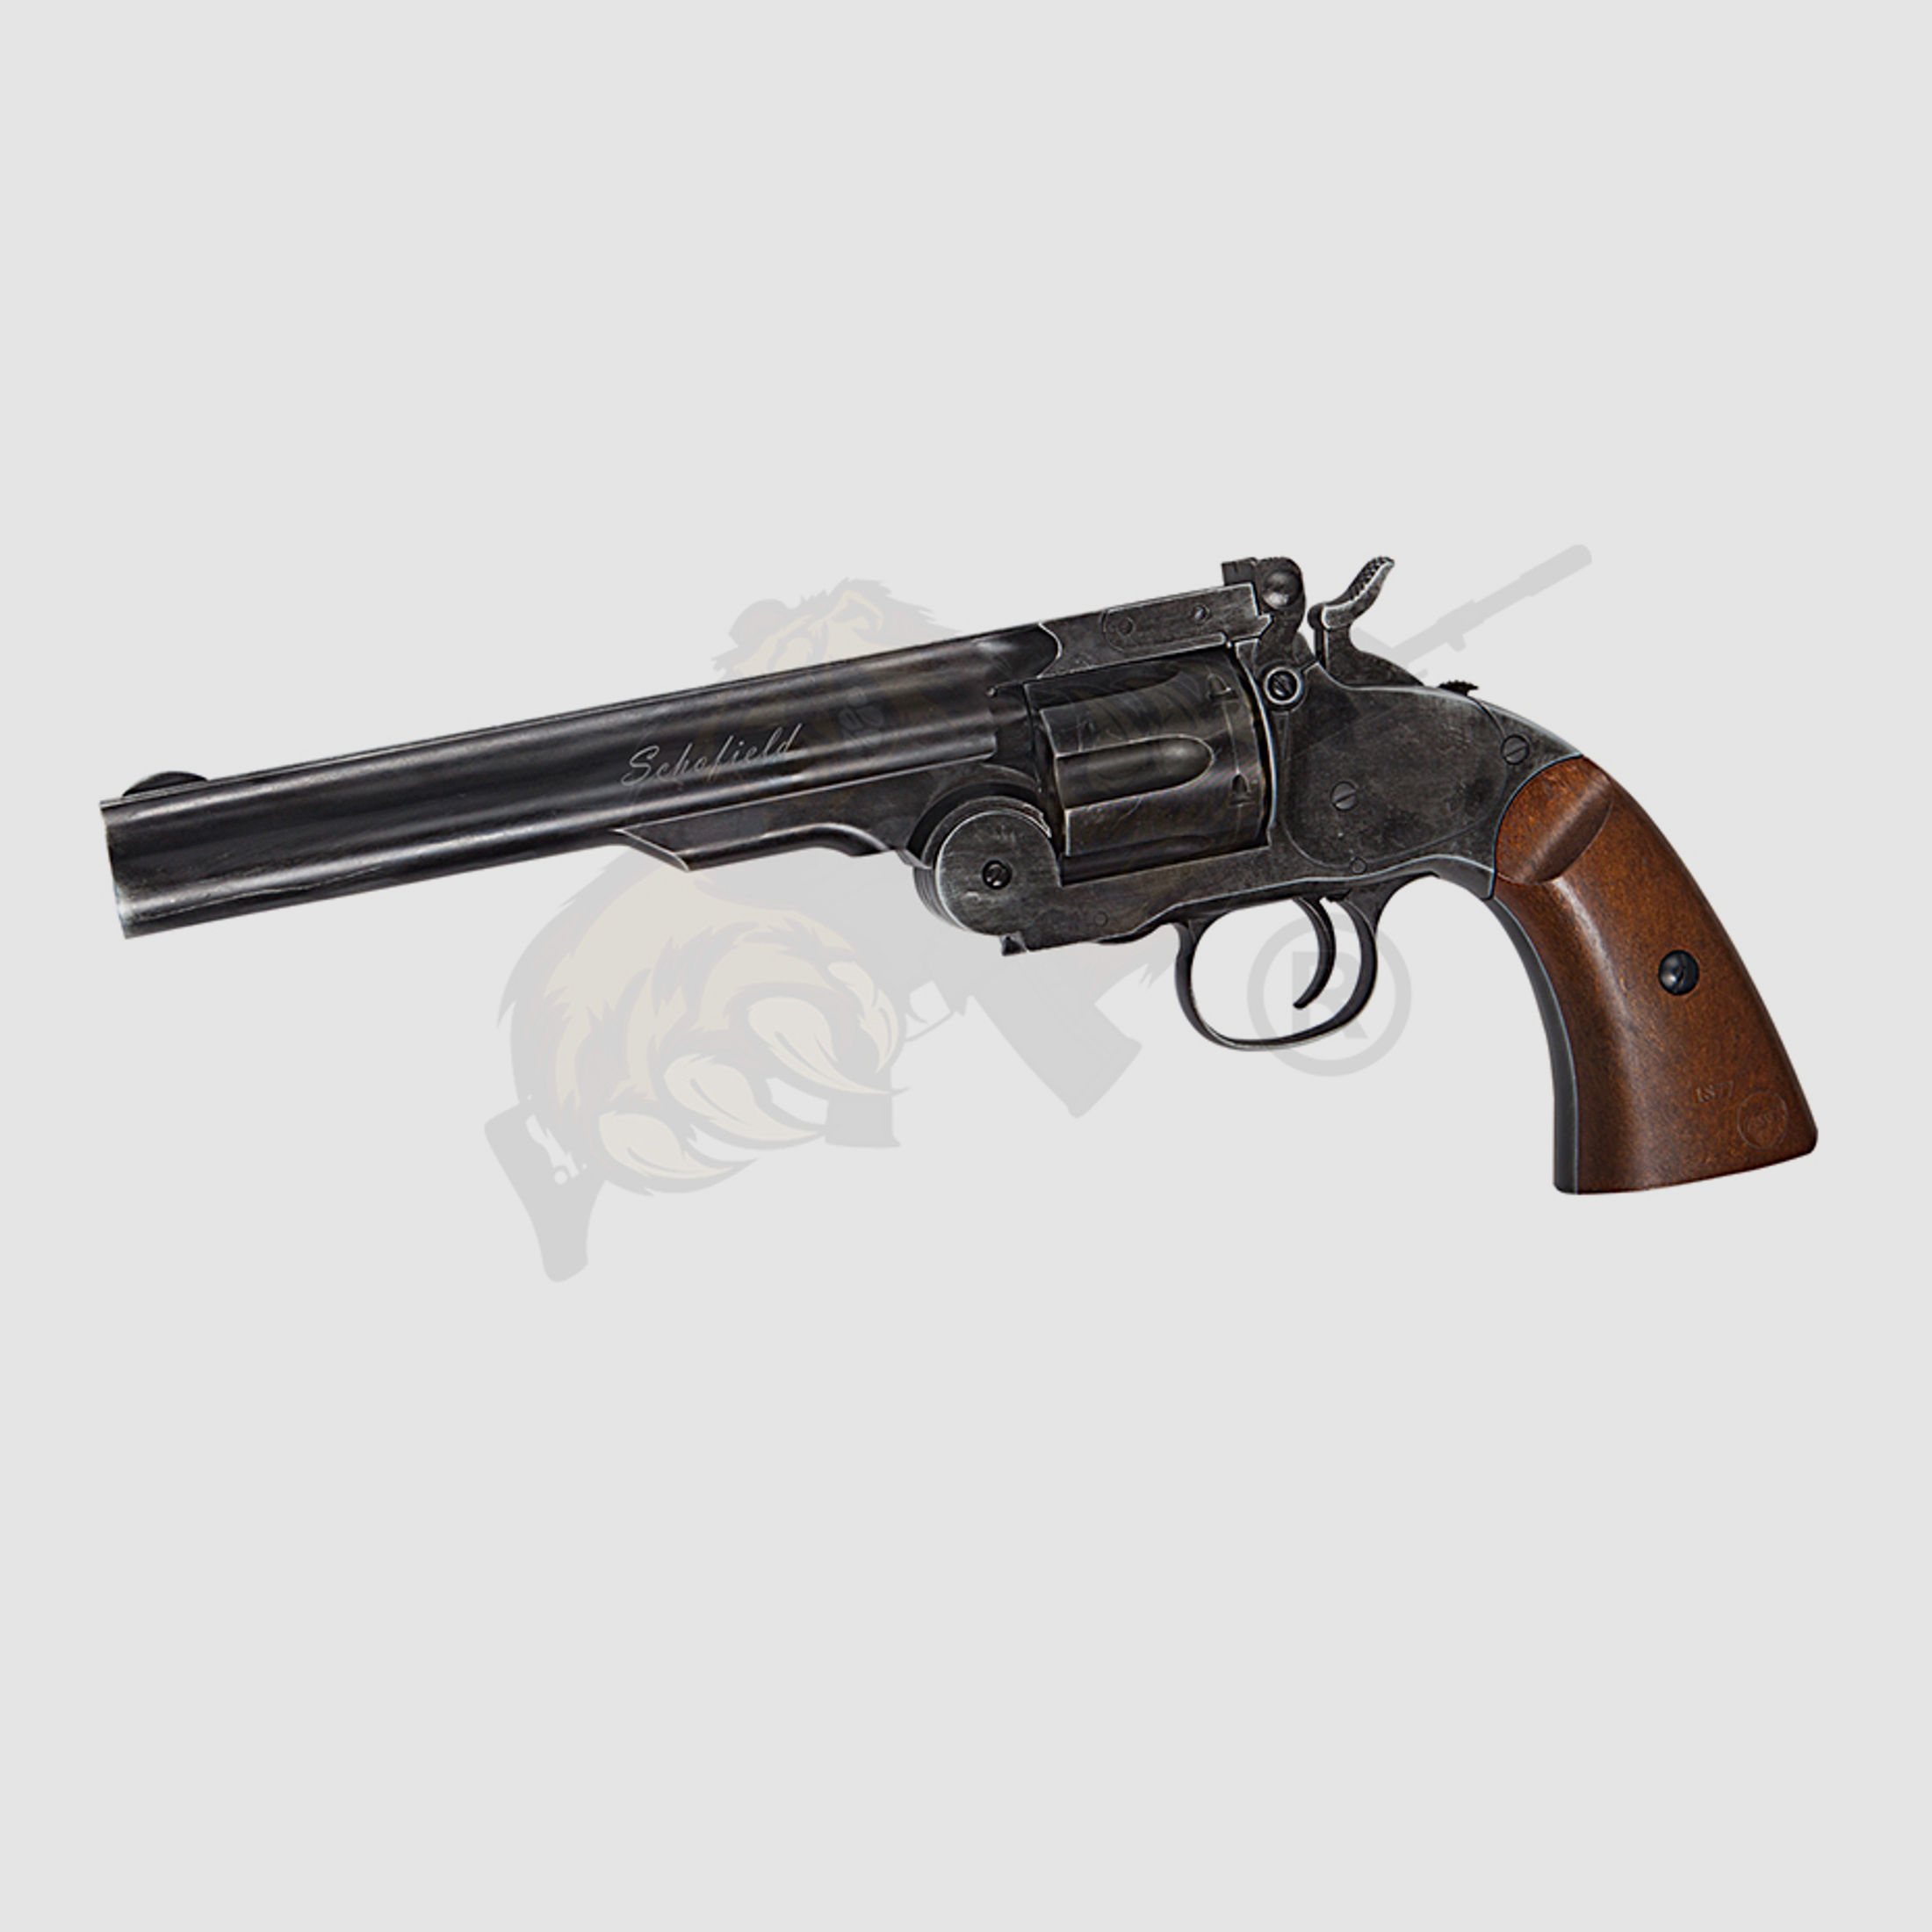 Schofield 6"- Aging BK & Wooden Grip Airsoft Revolver -F-